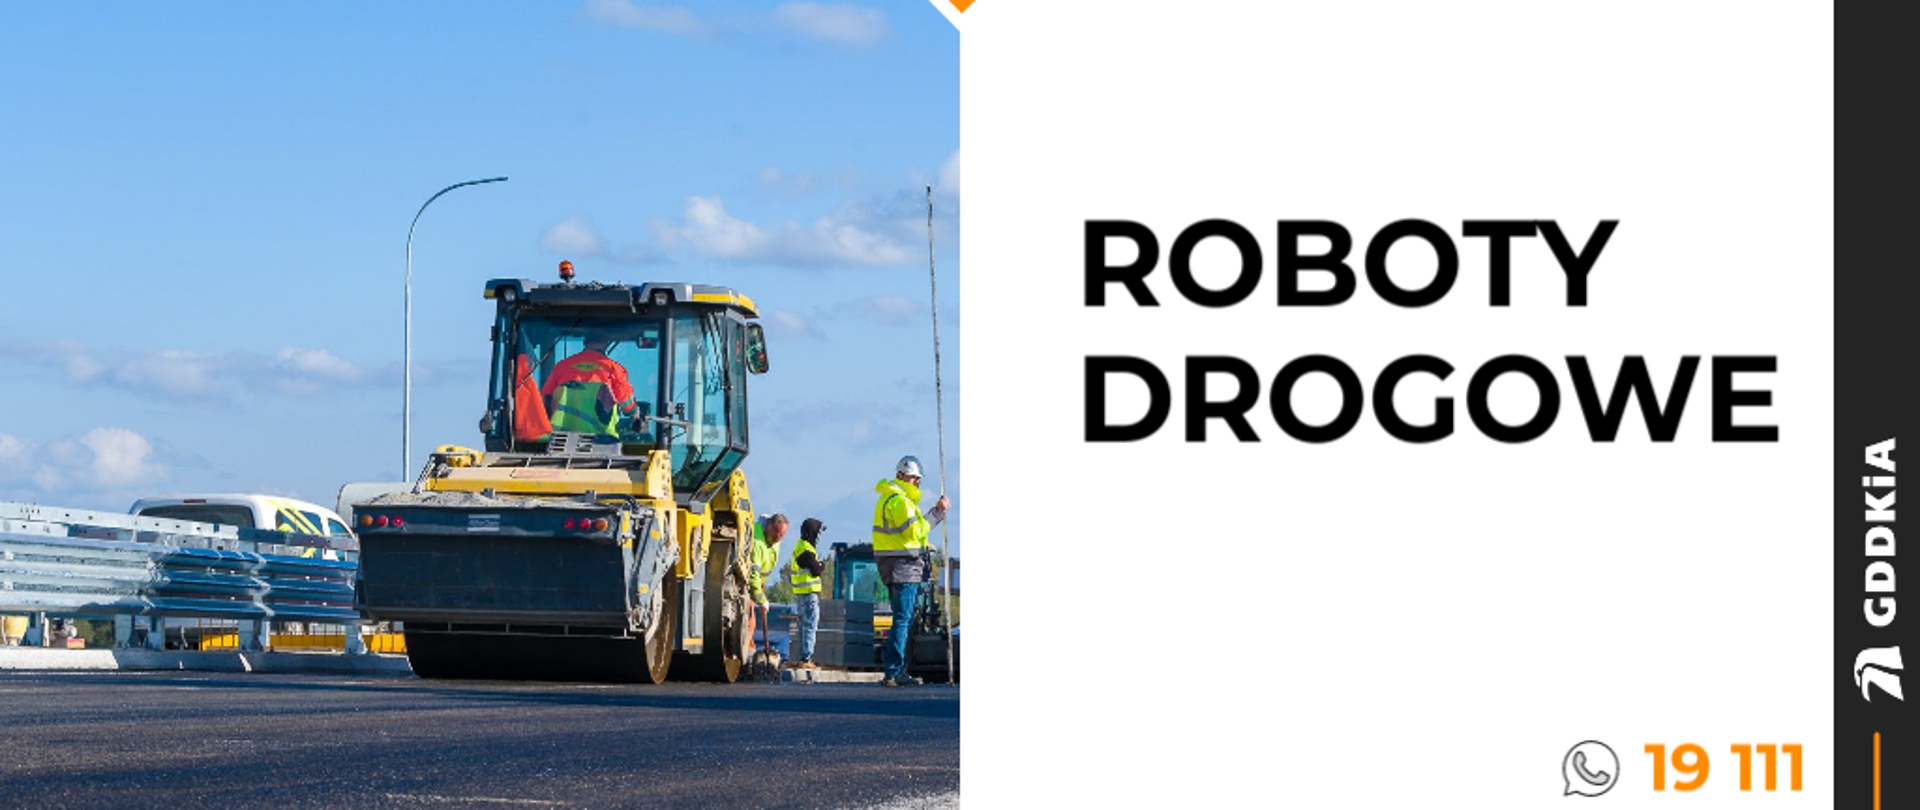 Roboty drogowe - infografika ze zdjęciem walca drogowego 